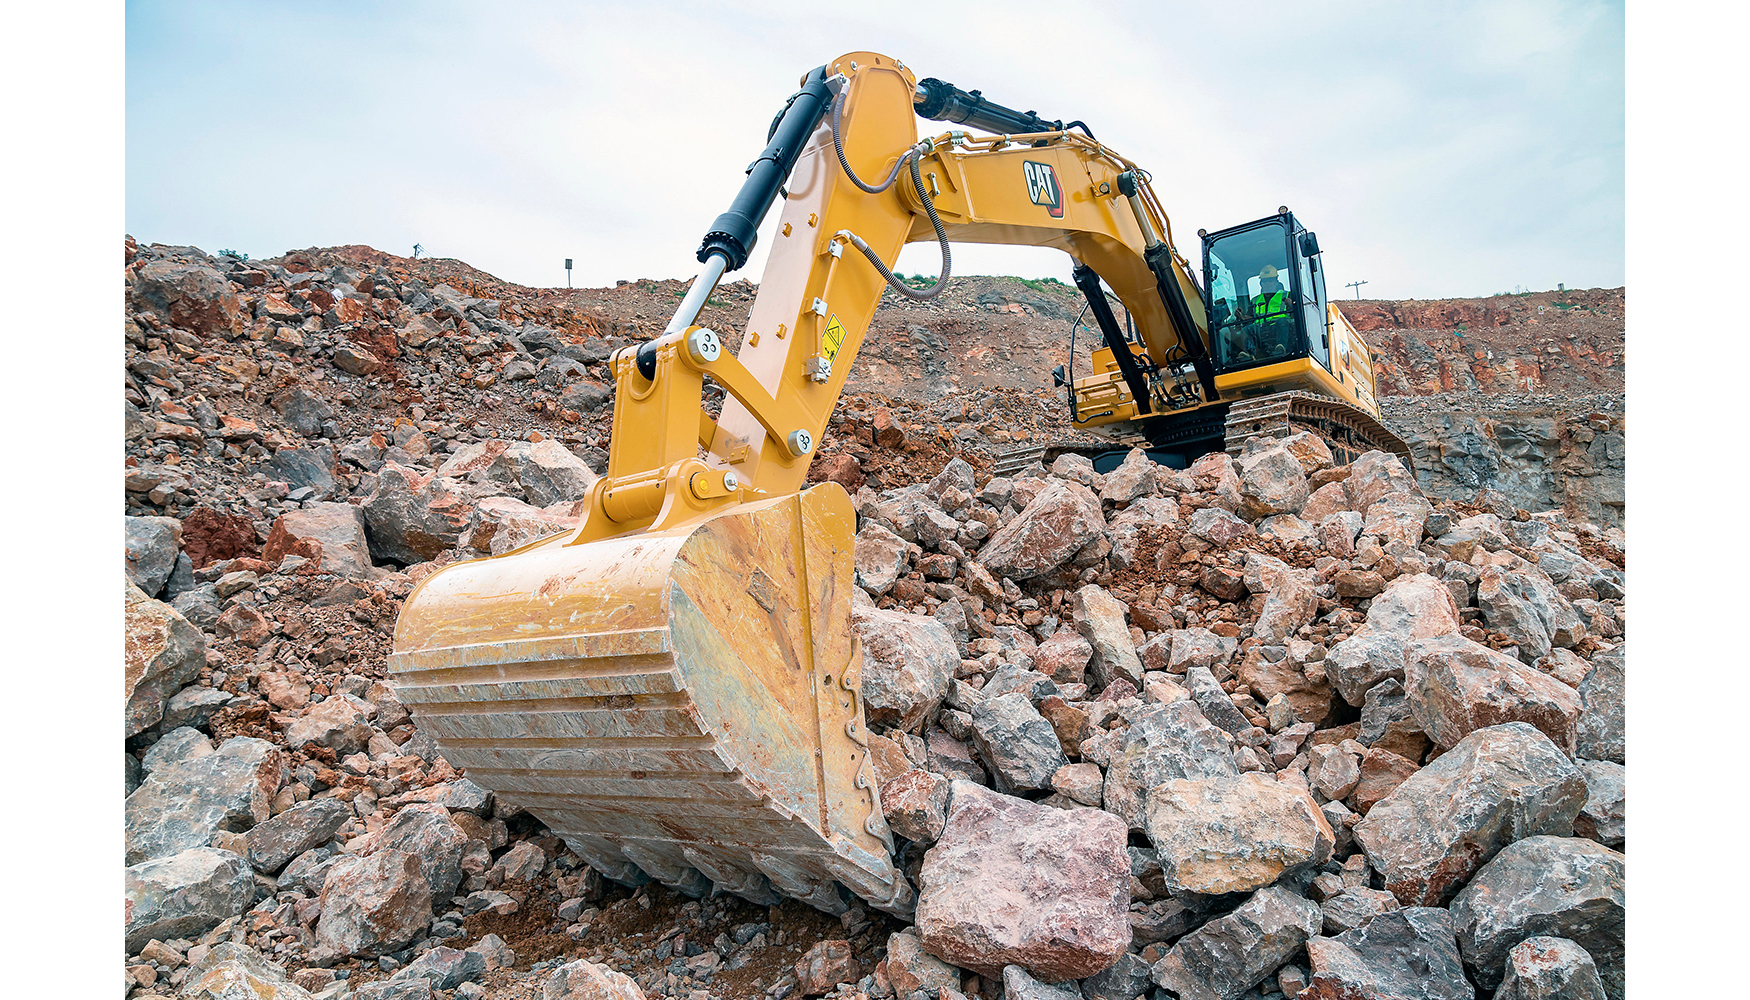 La nueva Cat 350 es una de las ltimas incorporaciones a la gama de excavadoras pesadas de Caterpillar